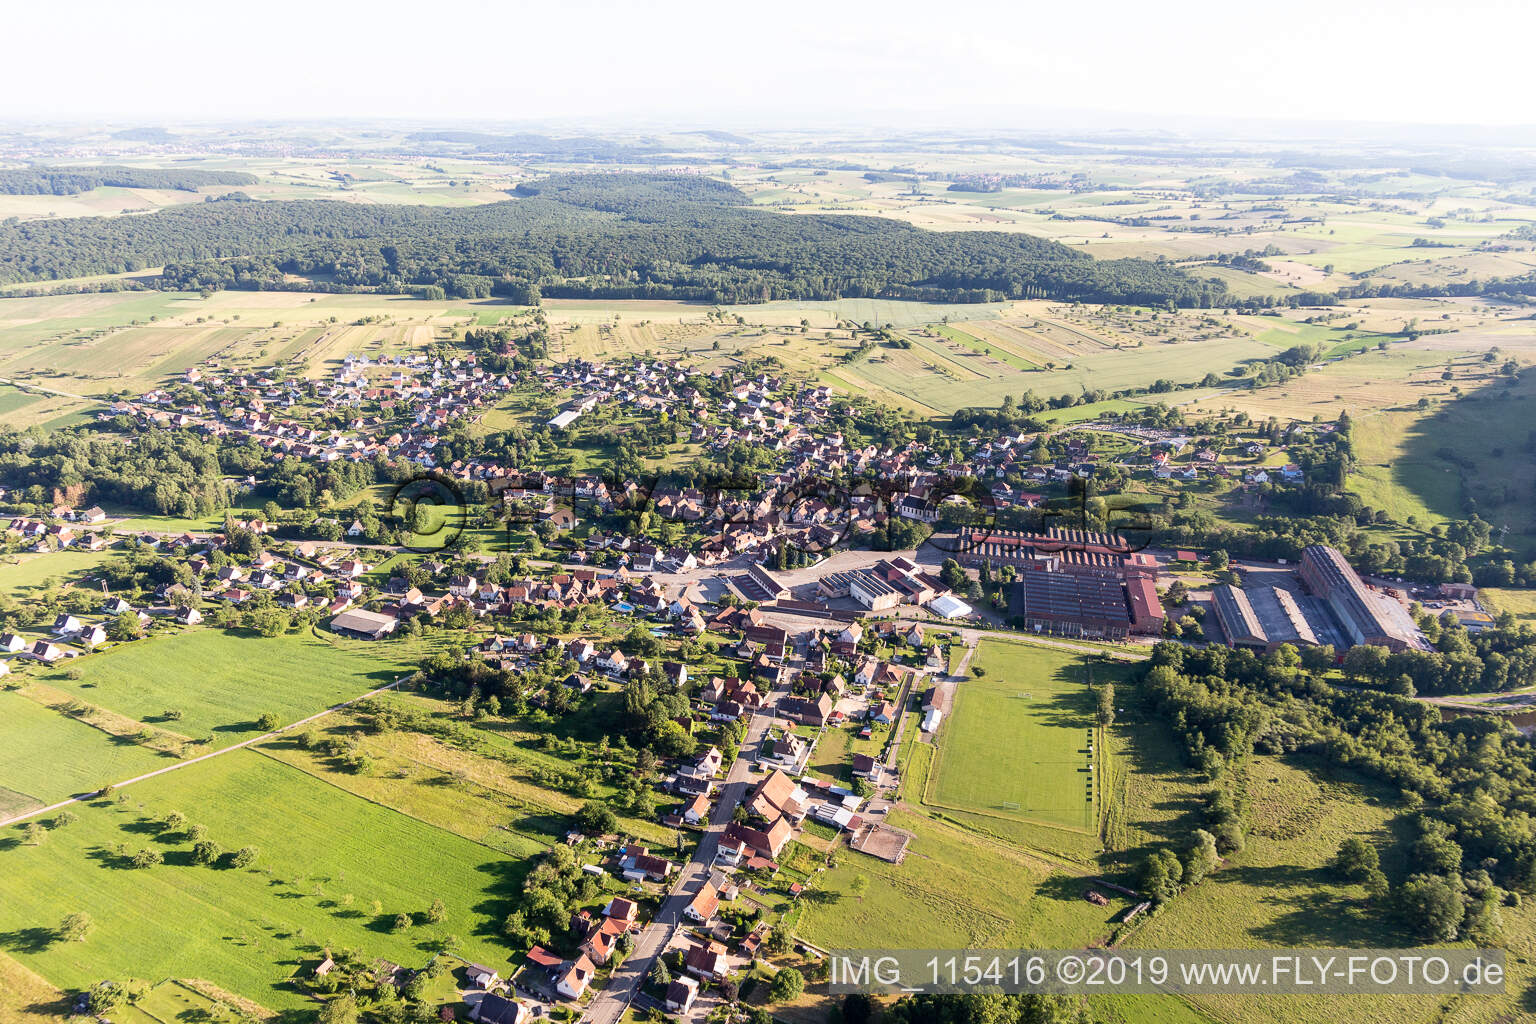 Zinswiller im Bundesland Bas-Rhin, Frankreich von einer Drohne aus